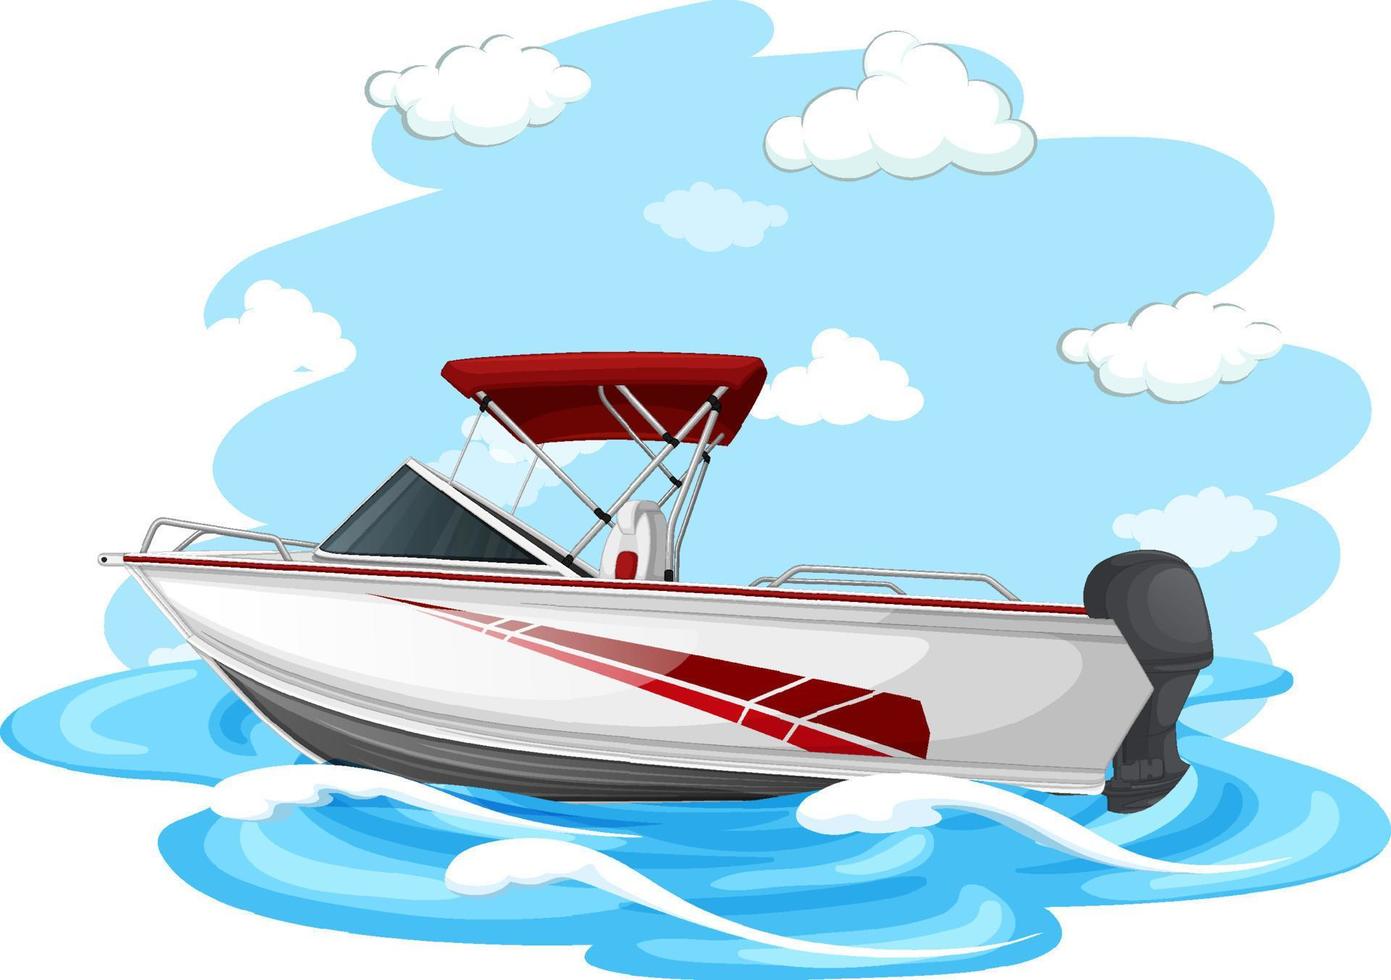 Schnellboot im Cartoon-Stil auf weißem Hintergrund vektor